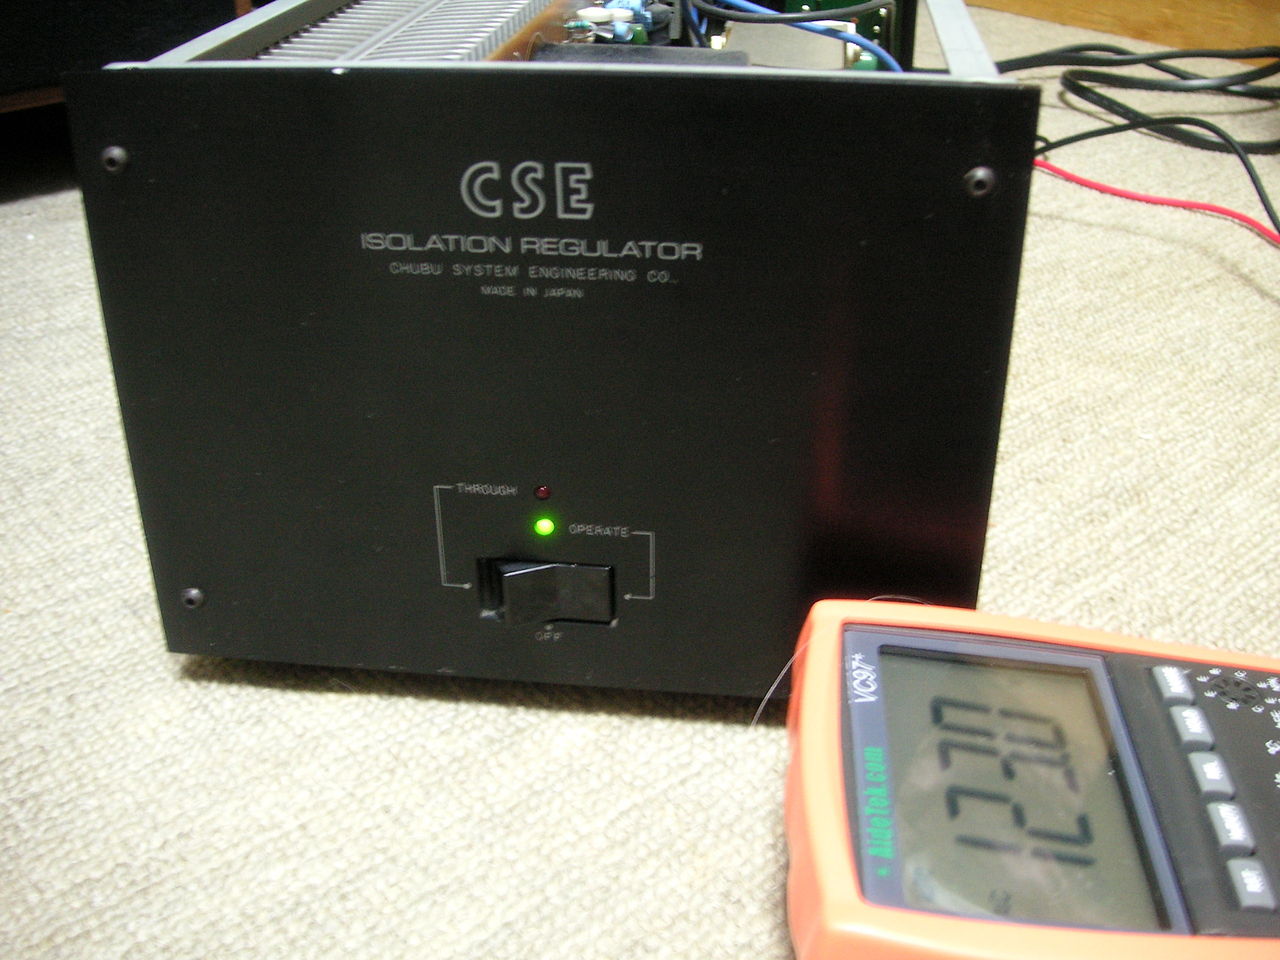 CSE R-100（電源アイソレーションレギュレーター）の導入と出力周波数